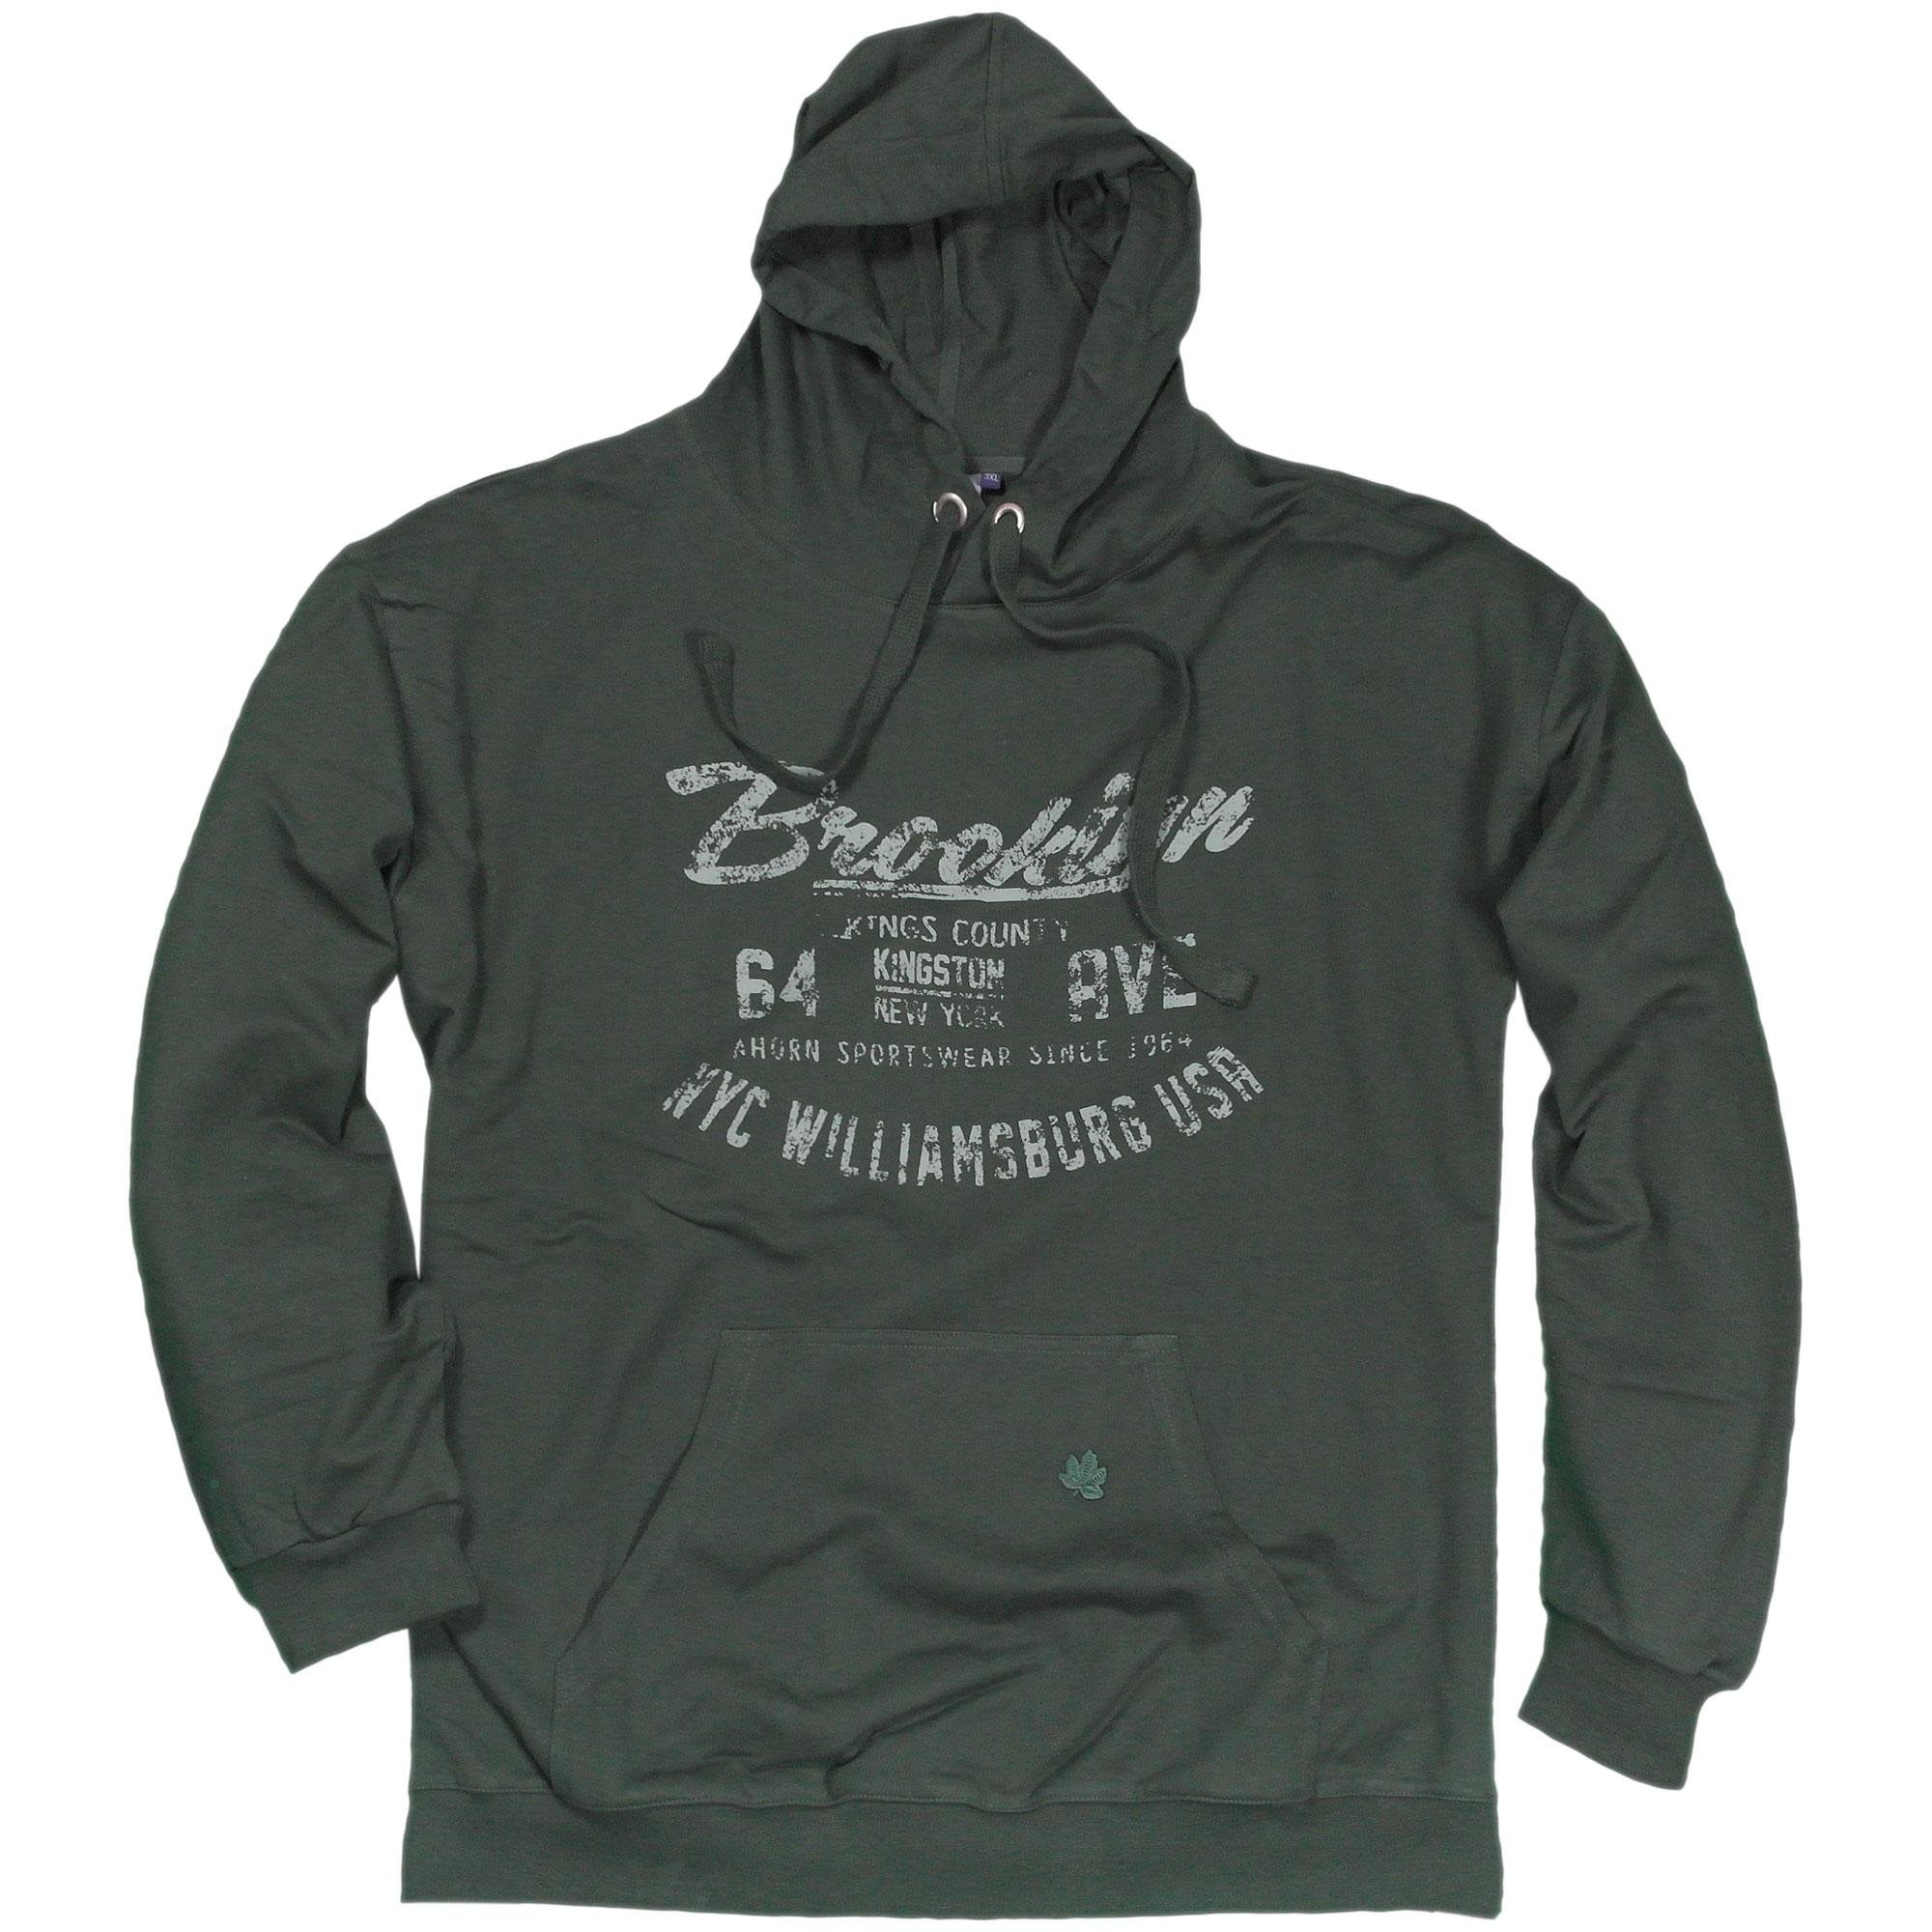 Ahorn Kapuzen Sweatshirt, grün in Übergröße, 52,95 €